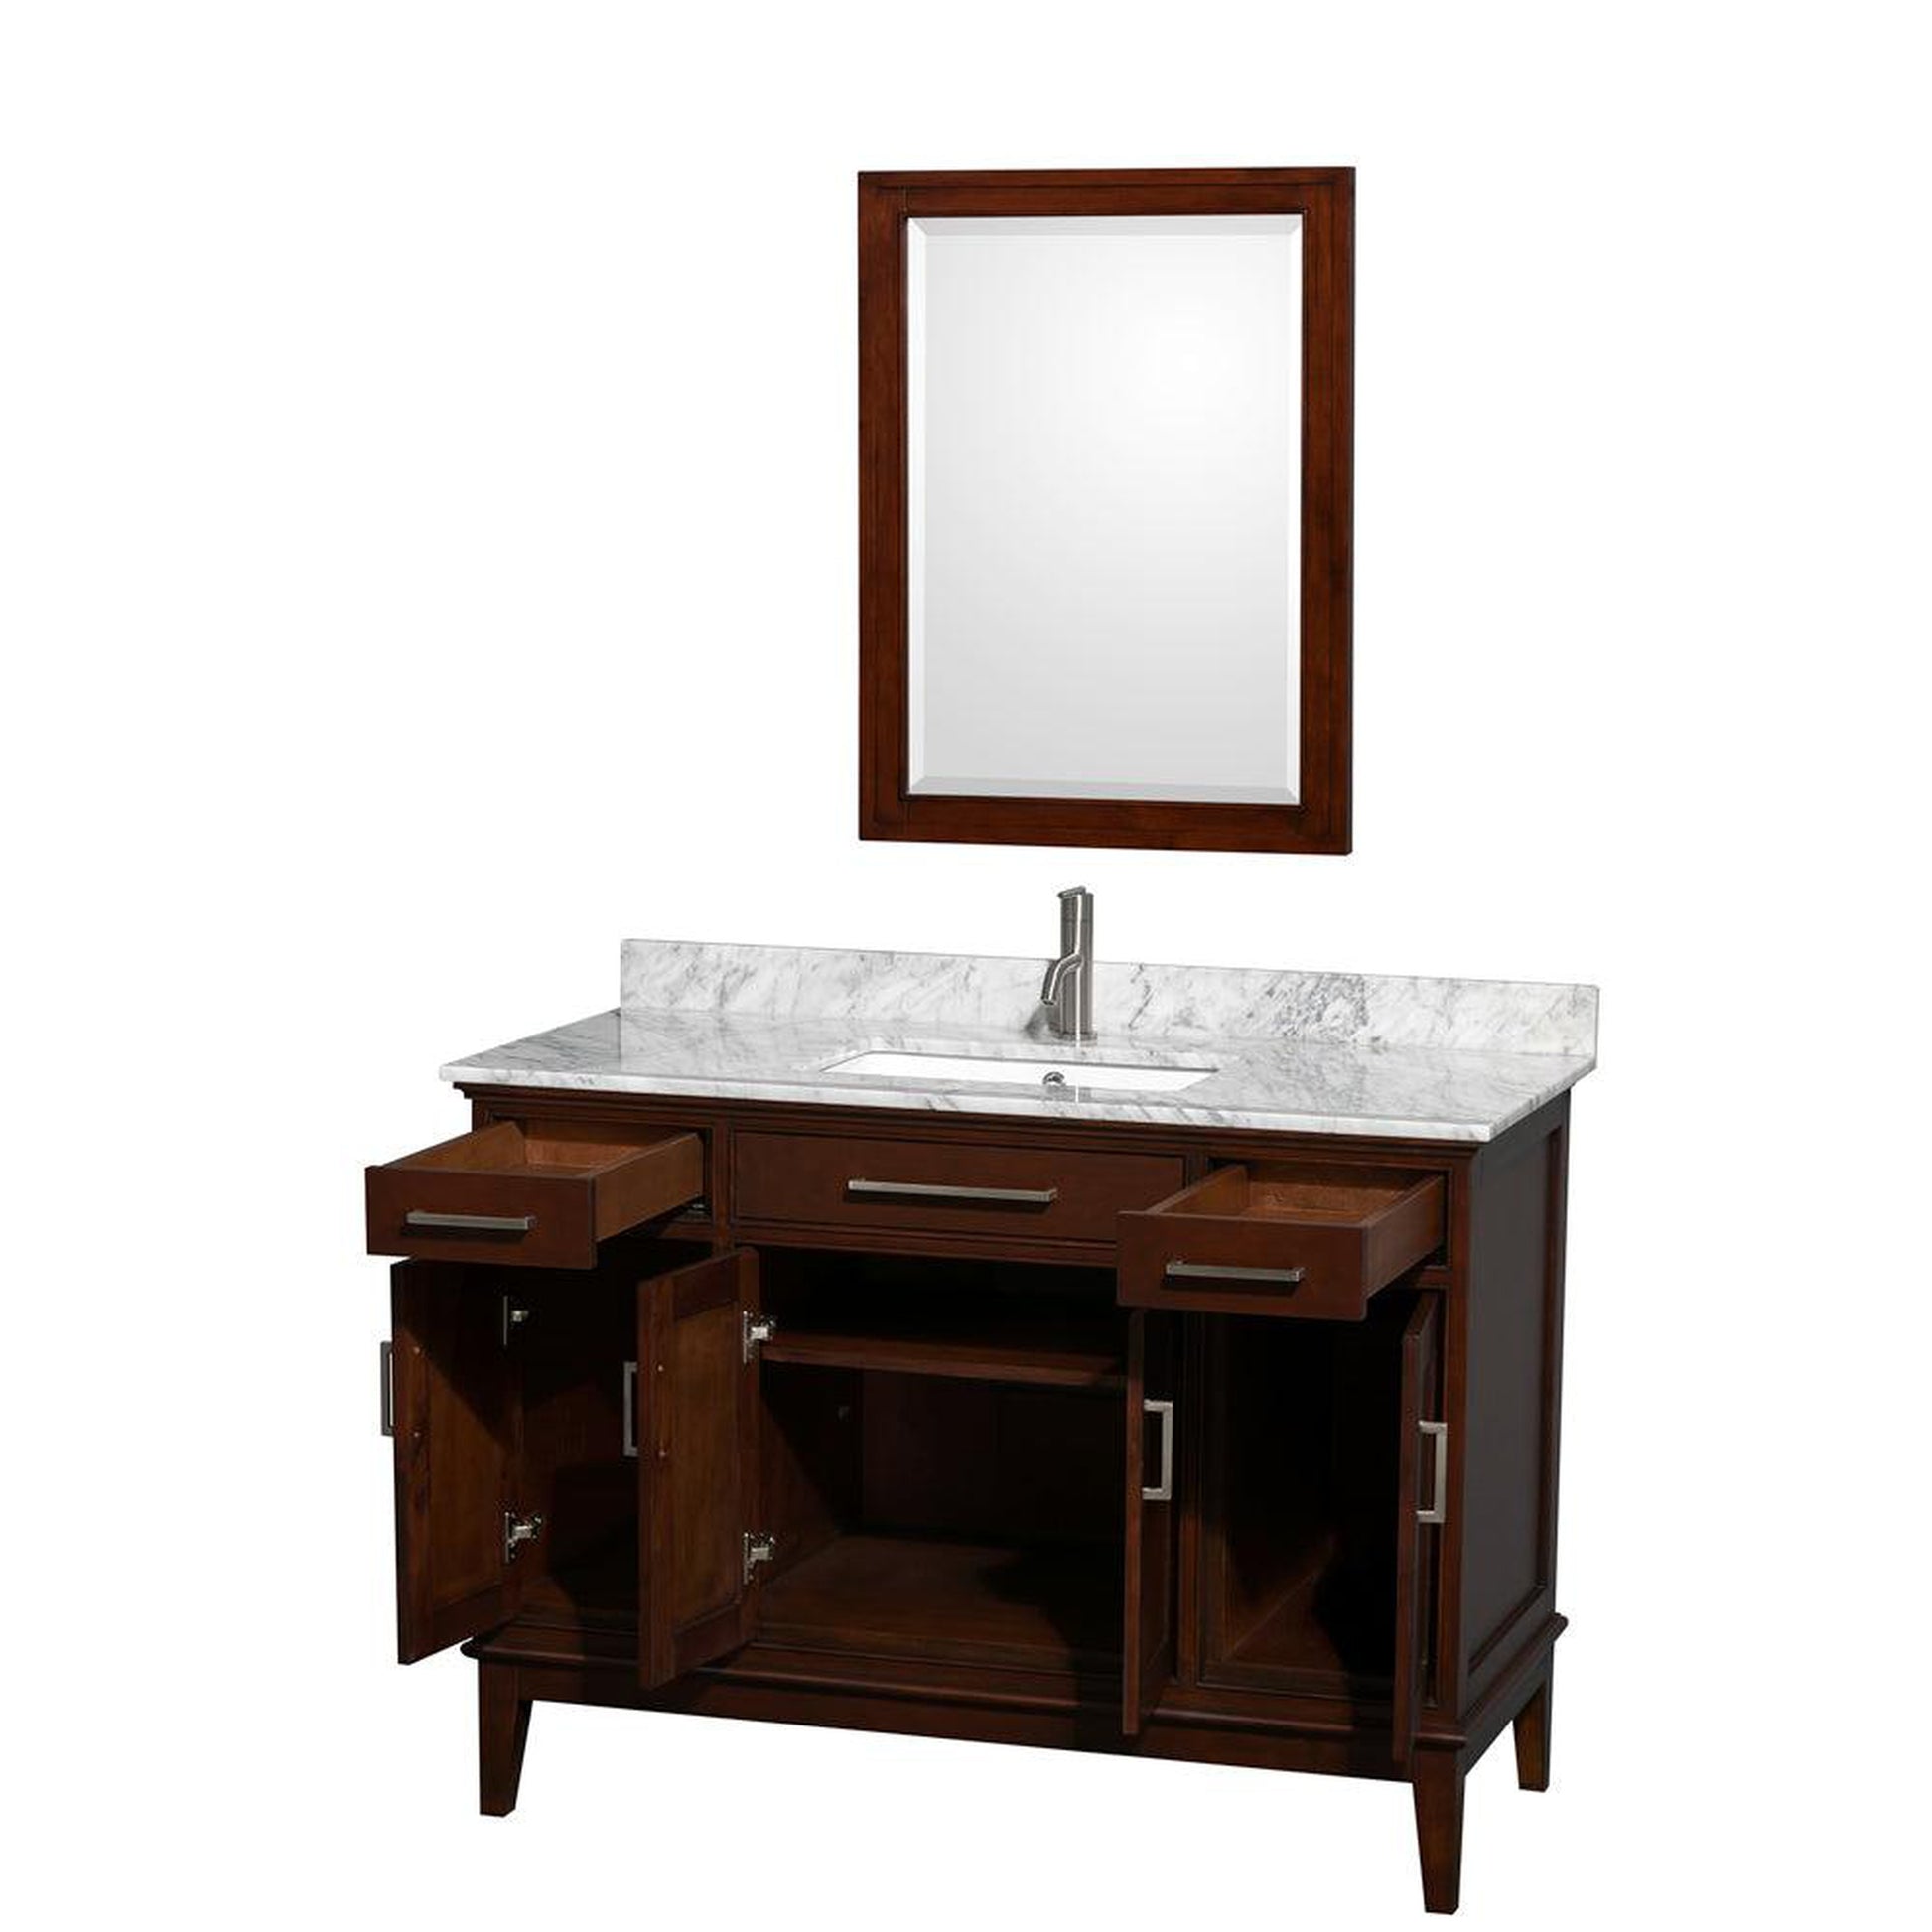 Wyndham Collection Hatton 48" Single Bathroom Vanity in Dark Chestnut, White Carrara Marble Countertop, Undermount Square Sink, and 24" Mirror